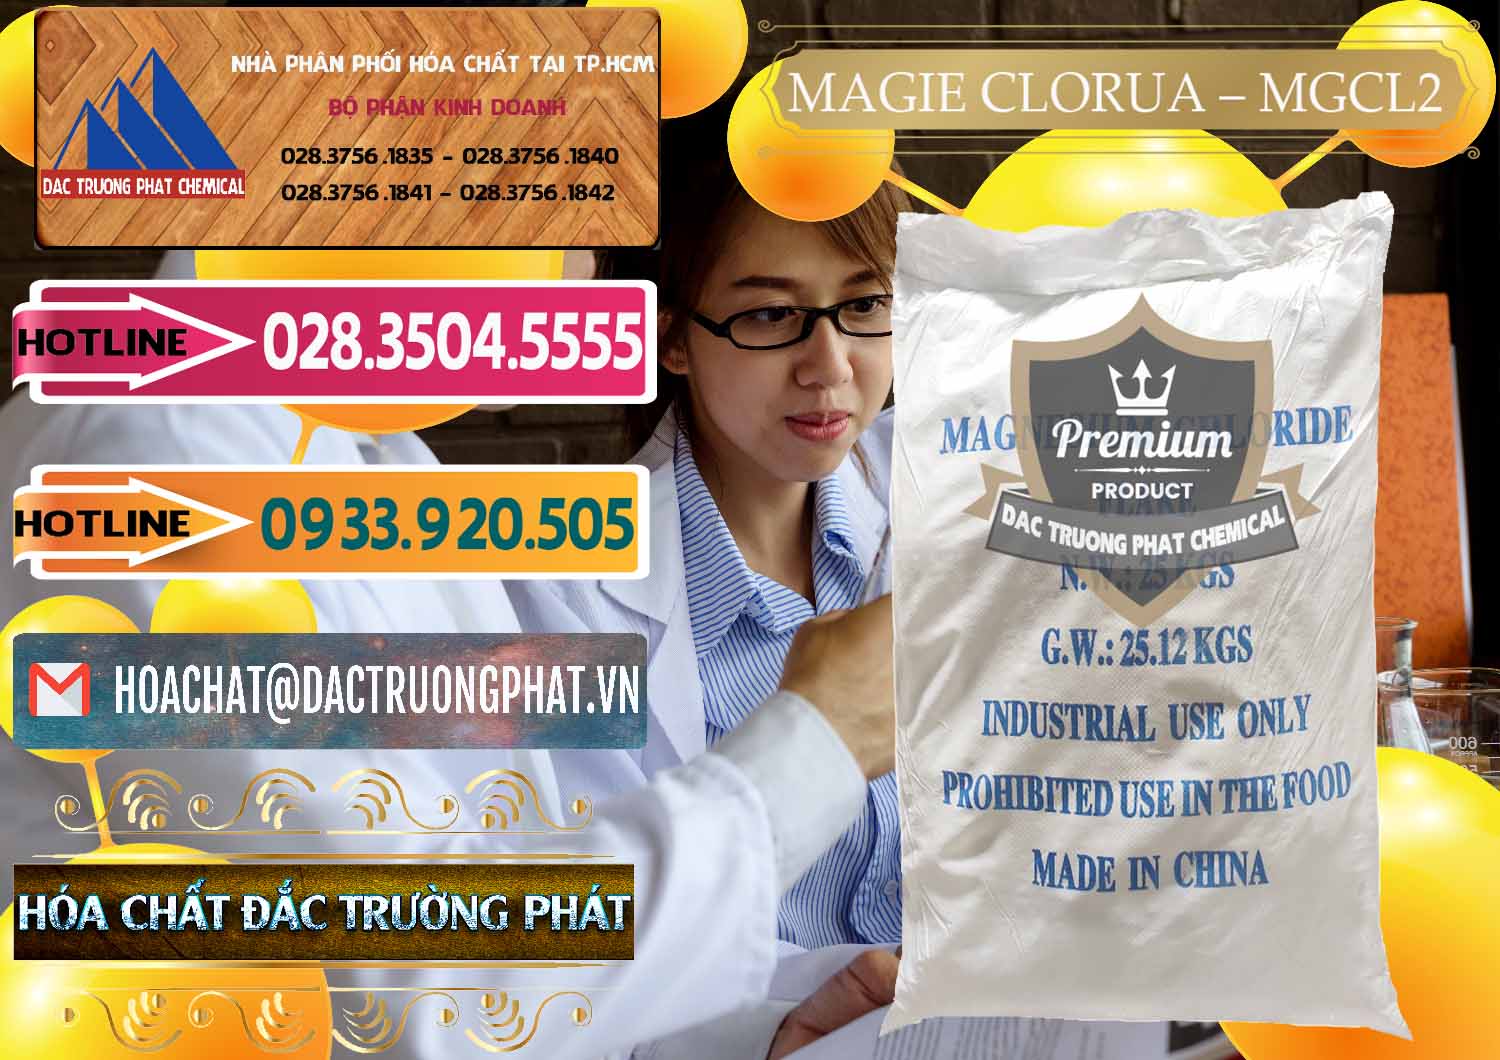 Nơi bán & phân phối Magie Clorua – MGCL2 96% Dạng Vảy Trung Quốc China - 0091 - Đơn vị cung cấp _ kinh doanh hóa chất tại TP.HCM - dactruongphat.vn